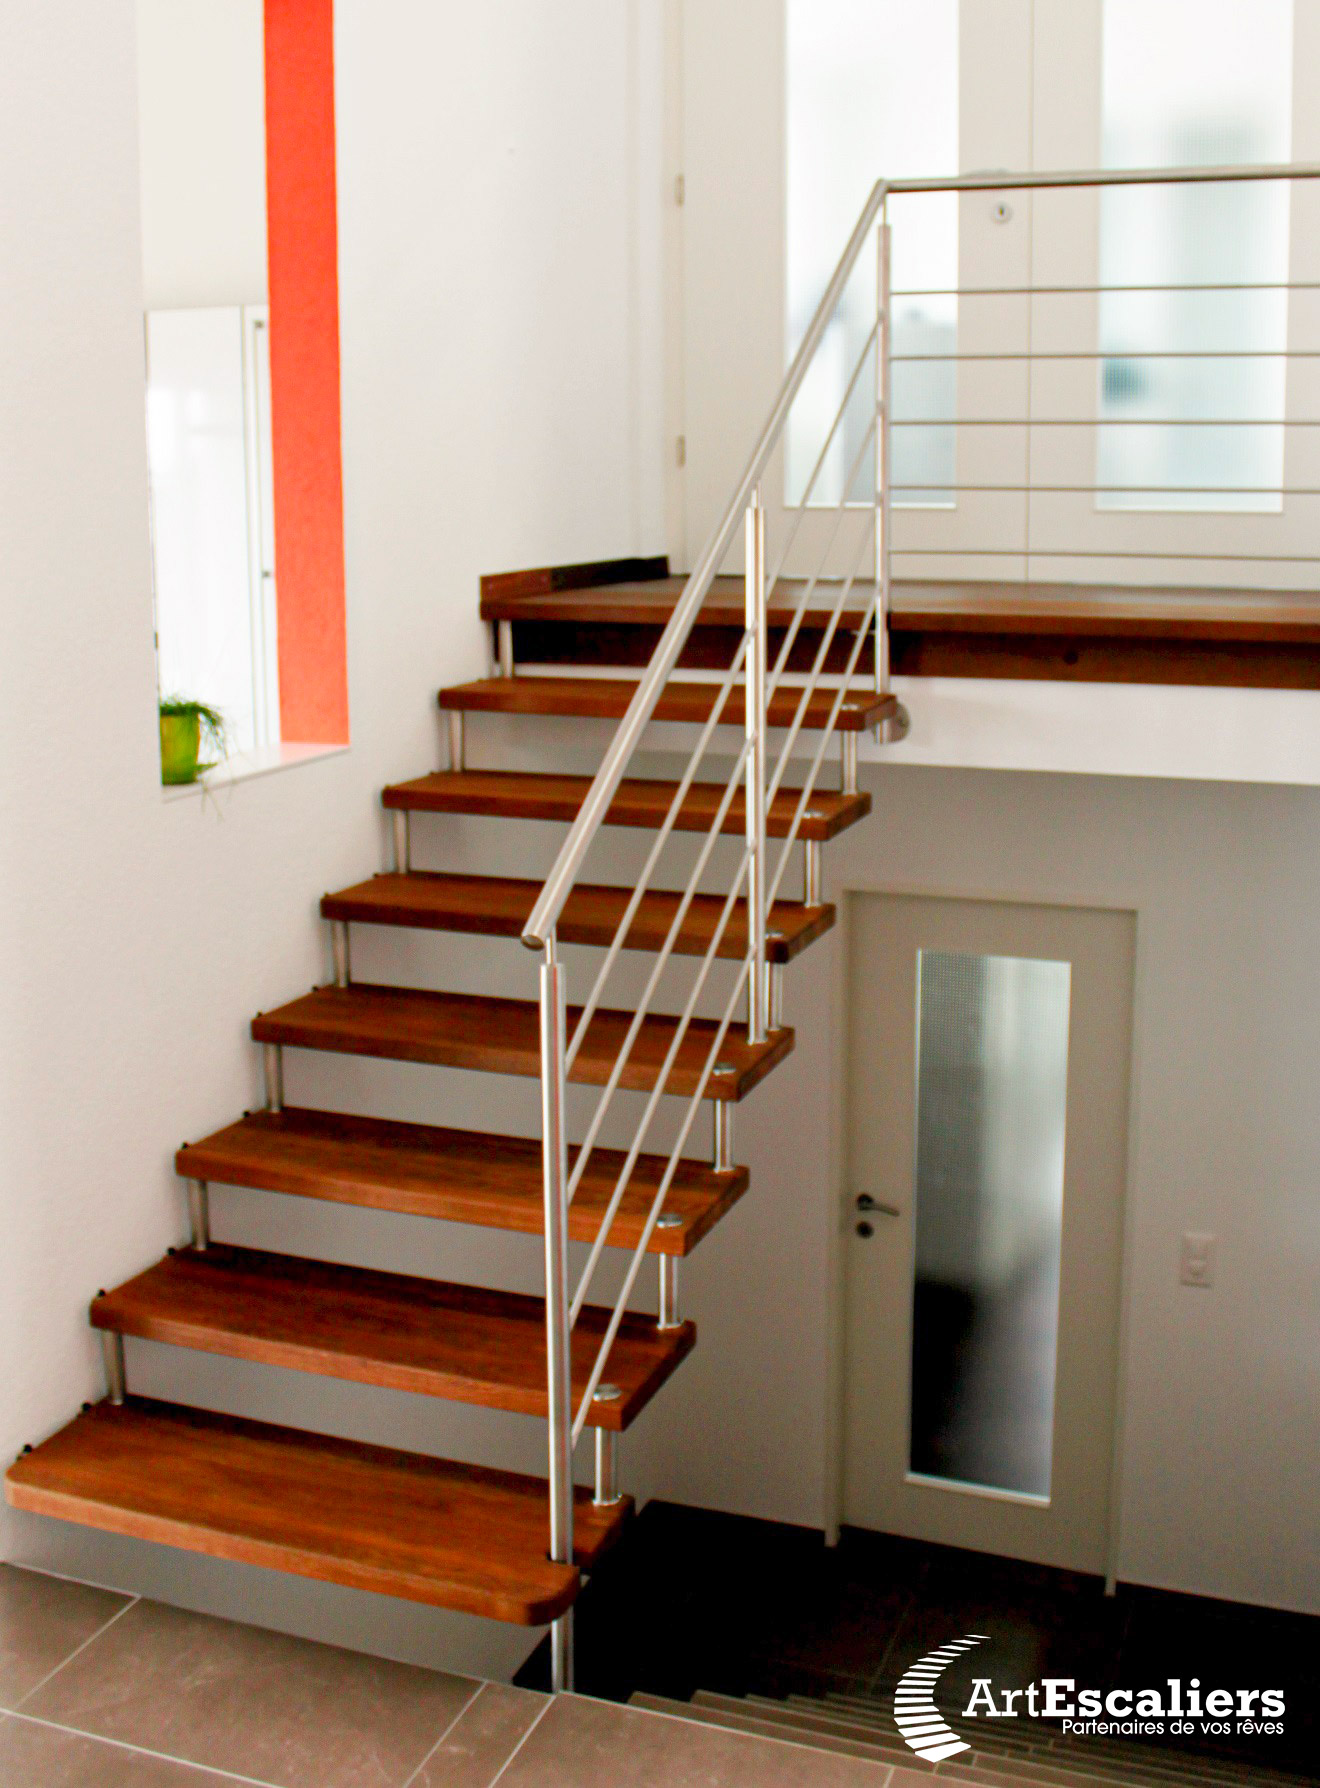 escalier-autoporteur-breuveté-bois-inox-acier-design-moderne